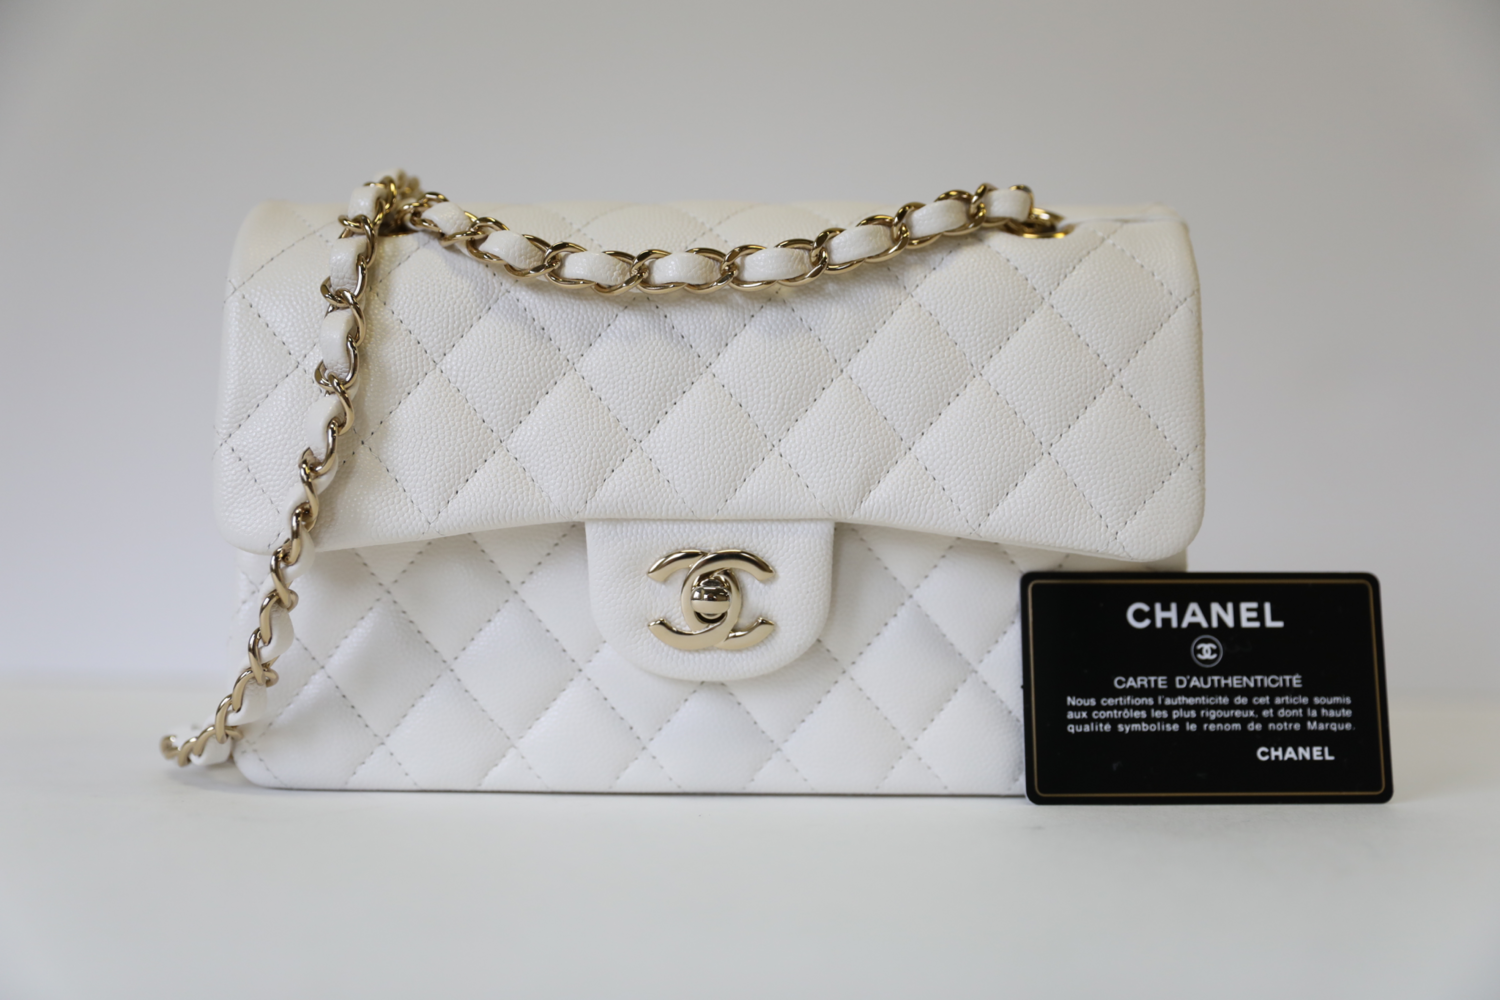 chanel shop handbags